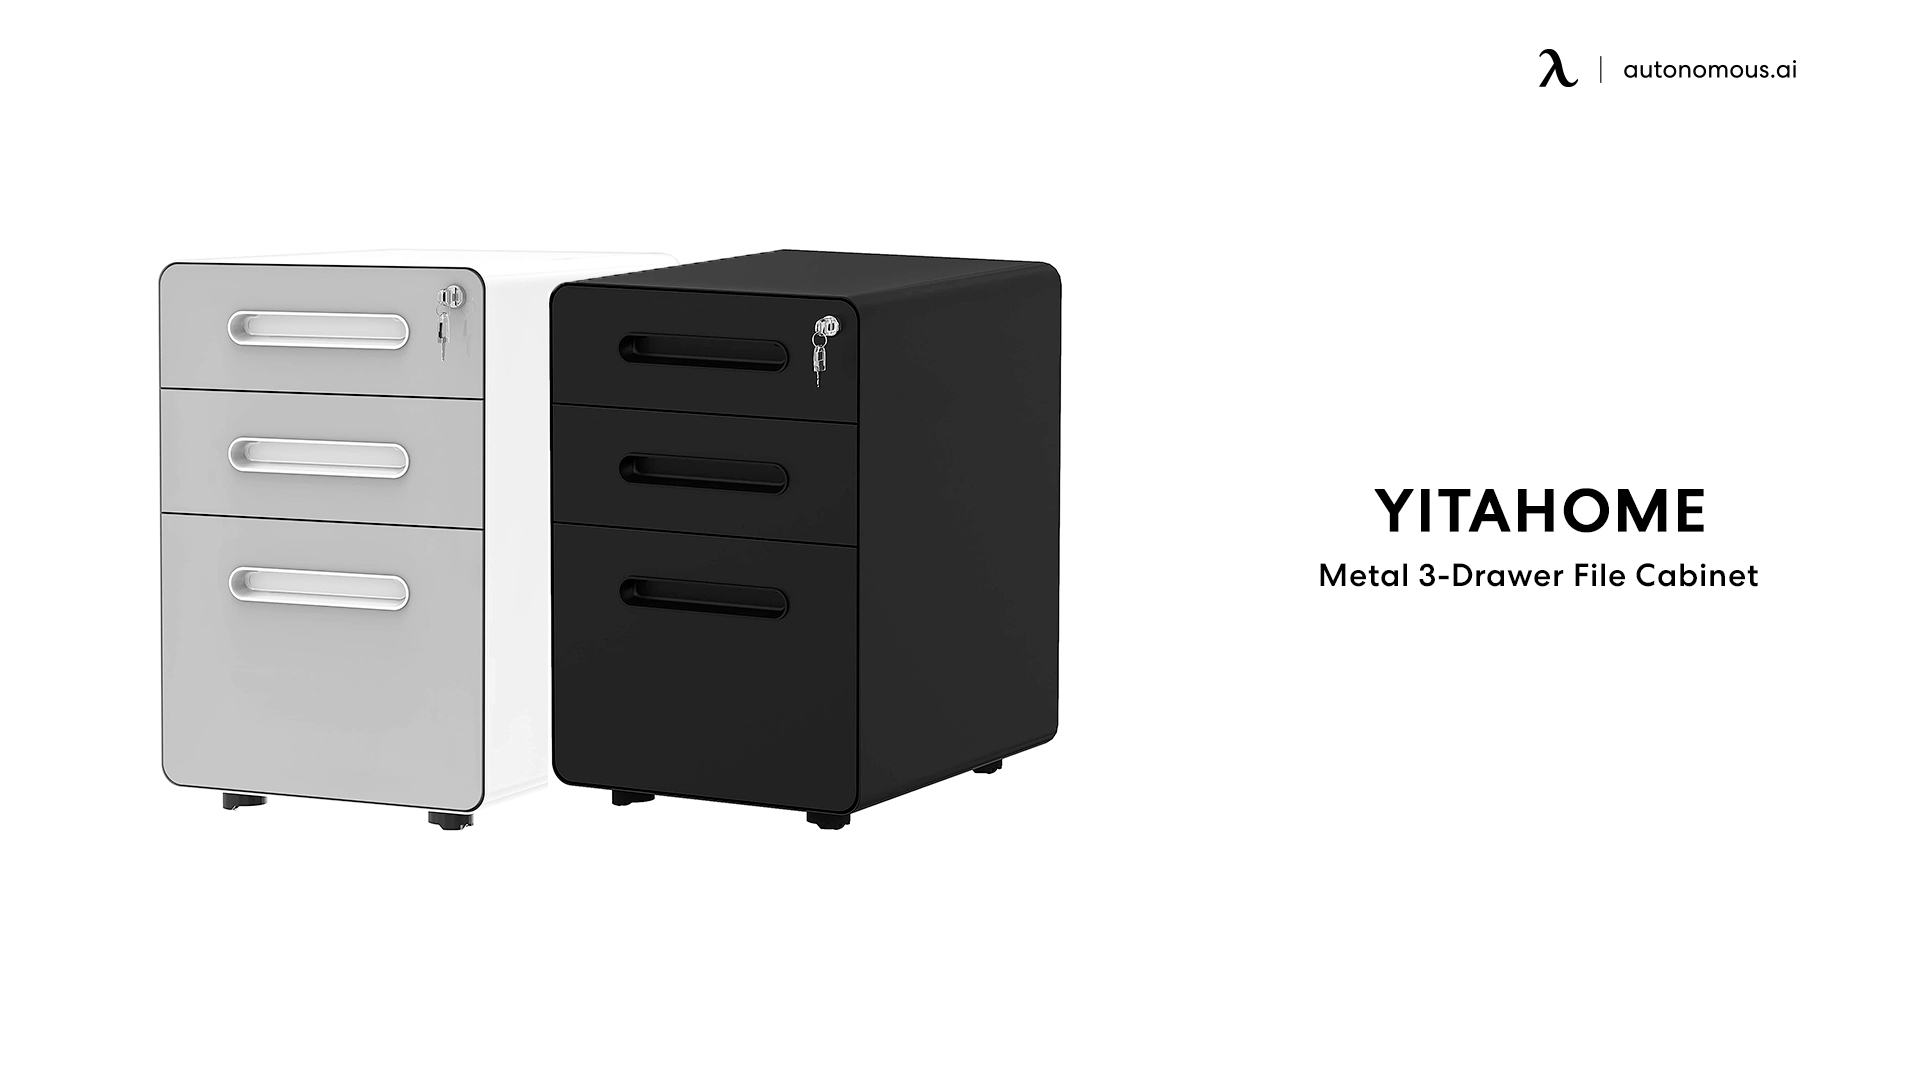 YitaHome Metal 3-Drawer File Cabinet